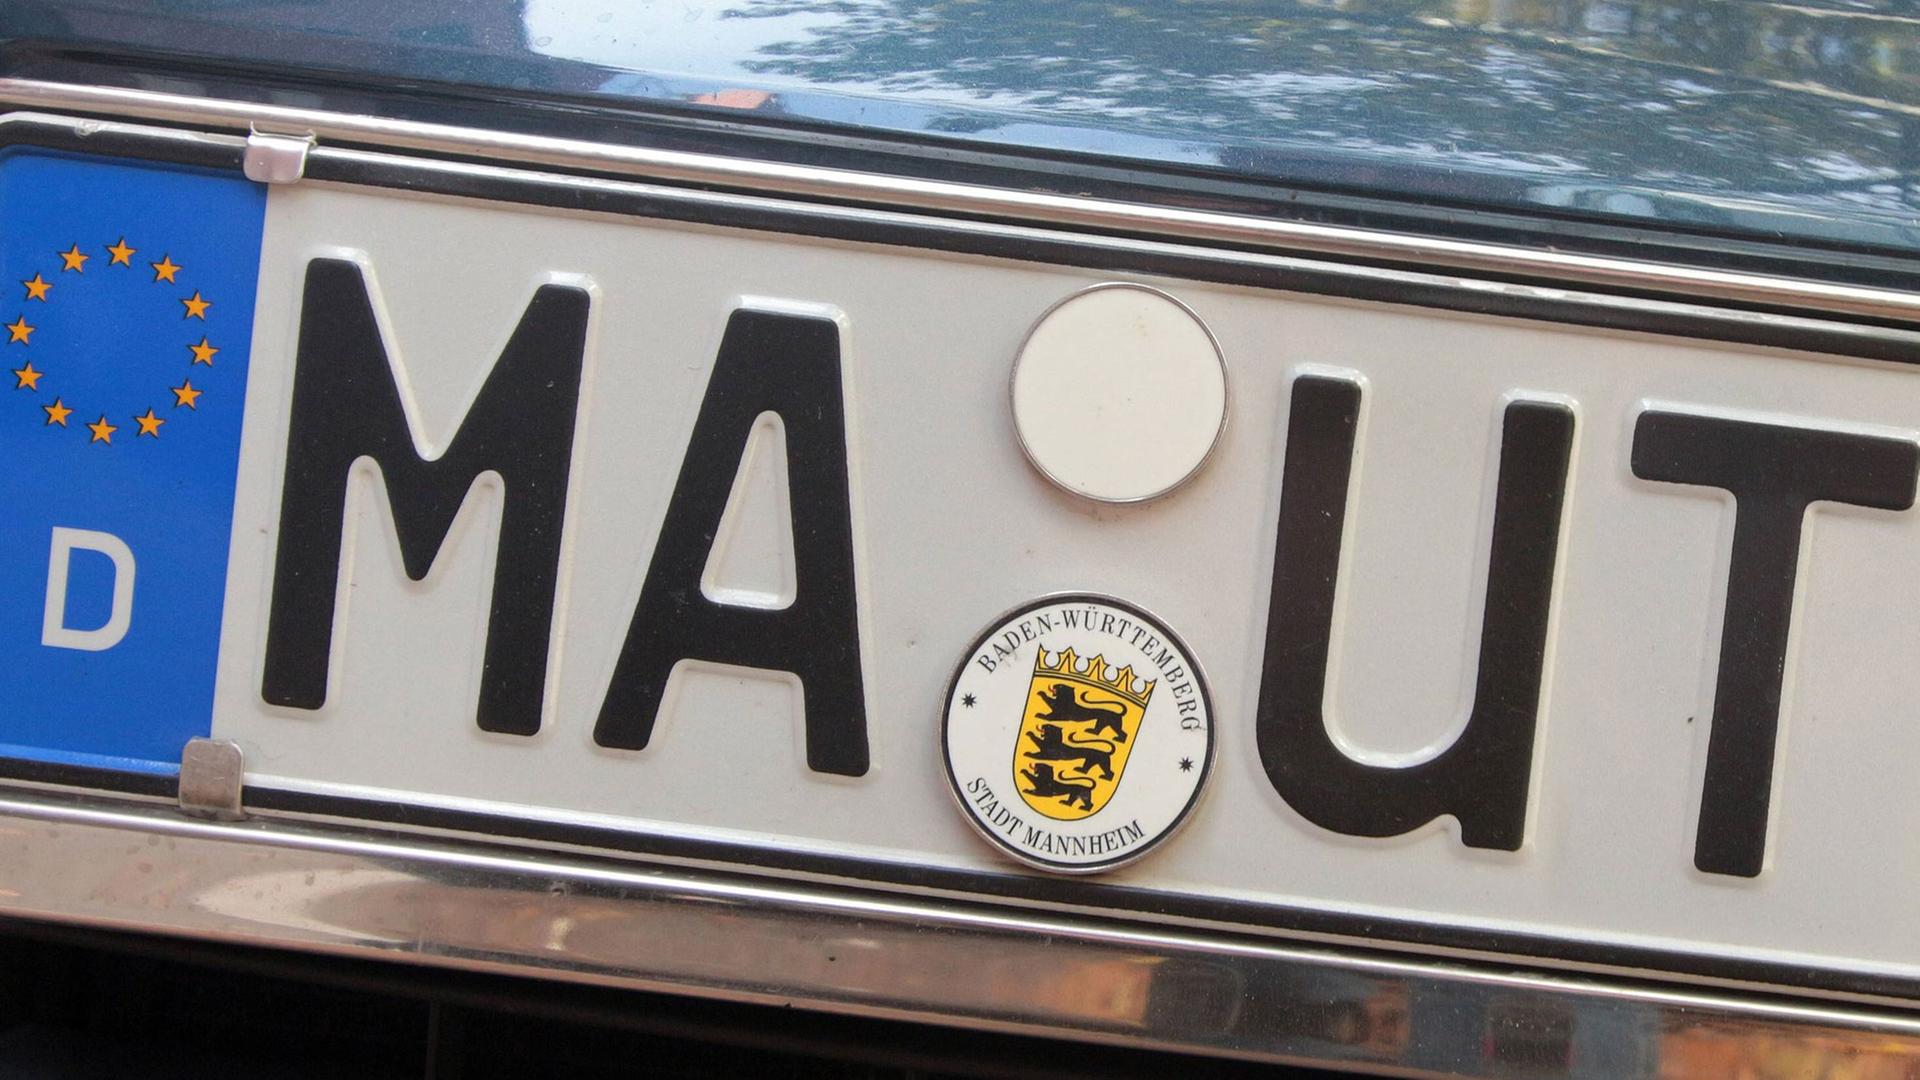 Ein Nummernschild mit den Buchstaben MA-UT als Symbolbild für die Mauterhebung über die elektronische Erkennung und Erfassung von Fahrzeug-Kennzeichen